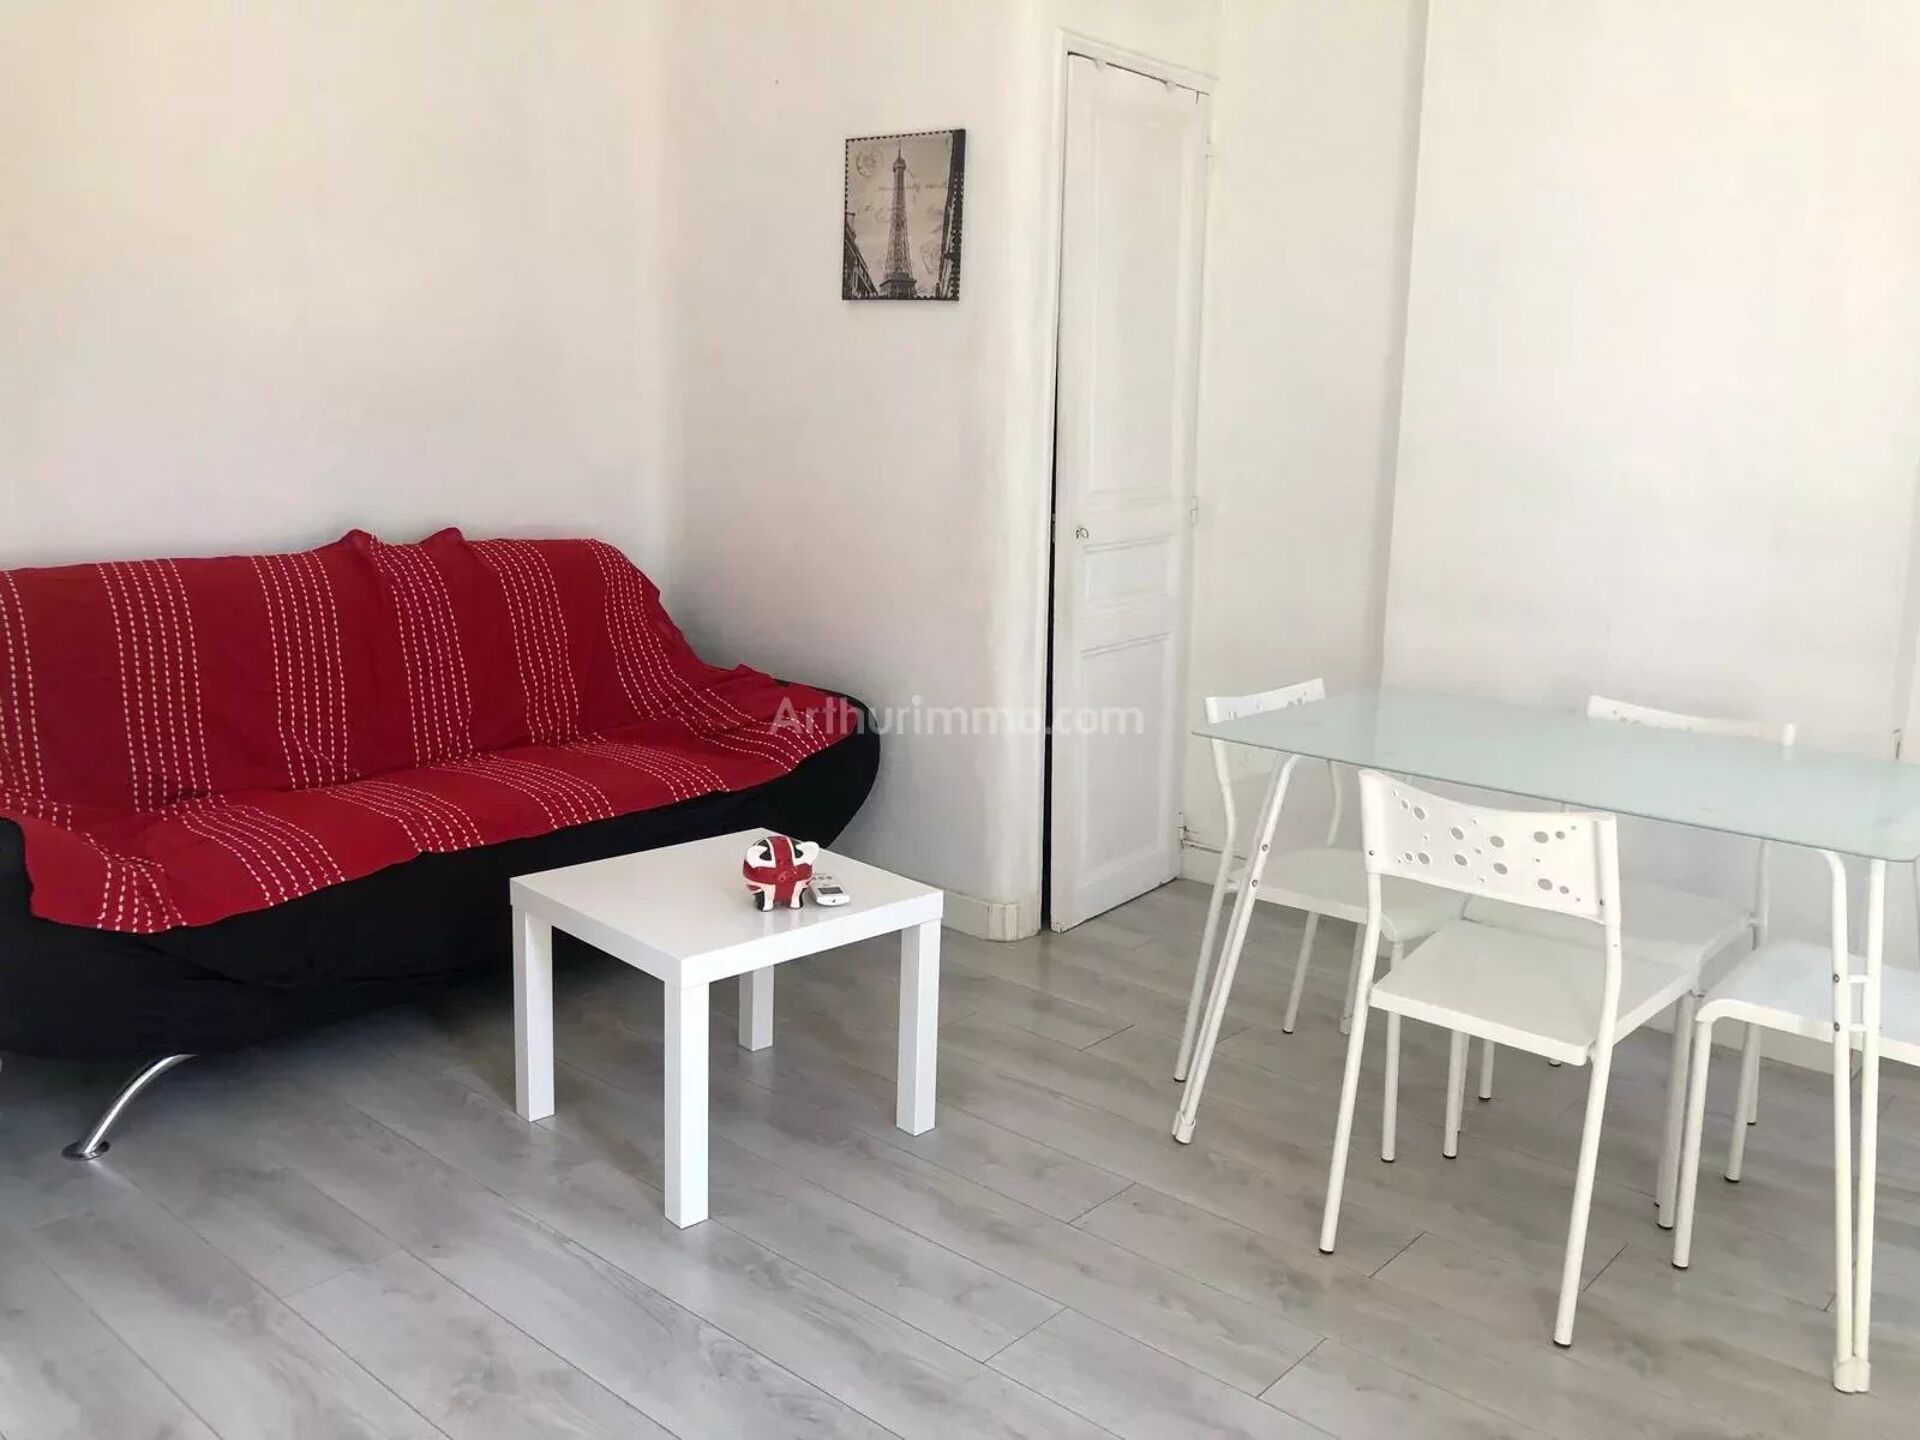 Vente Appartement 37m² 2 Pièces à Marseille (13000) - Arthurimmo